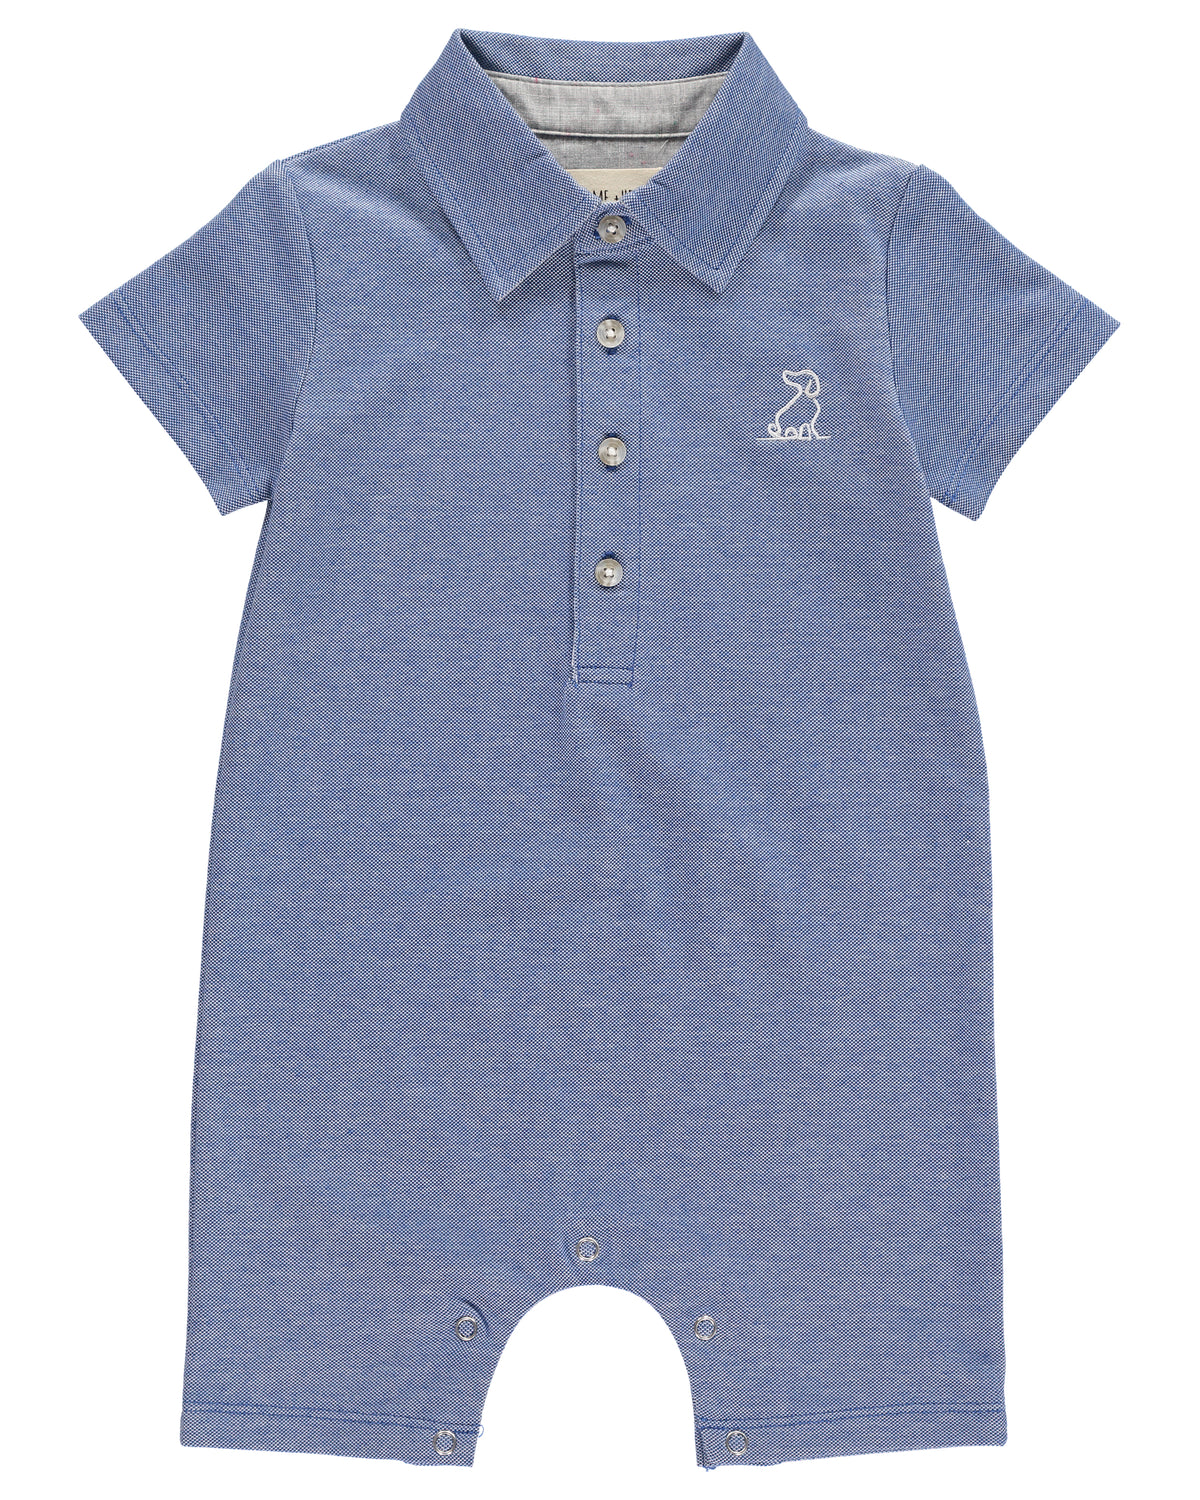 vooroordeel bedelaar lancering Baby Boys Blue Cotton Polo Romper |Me & Henry | Sofella - House of Sofella